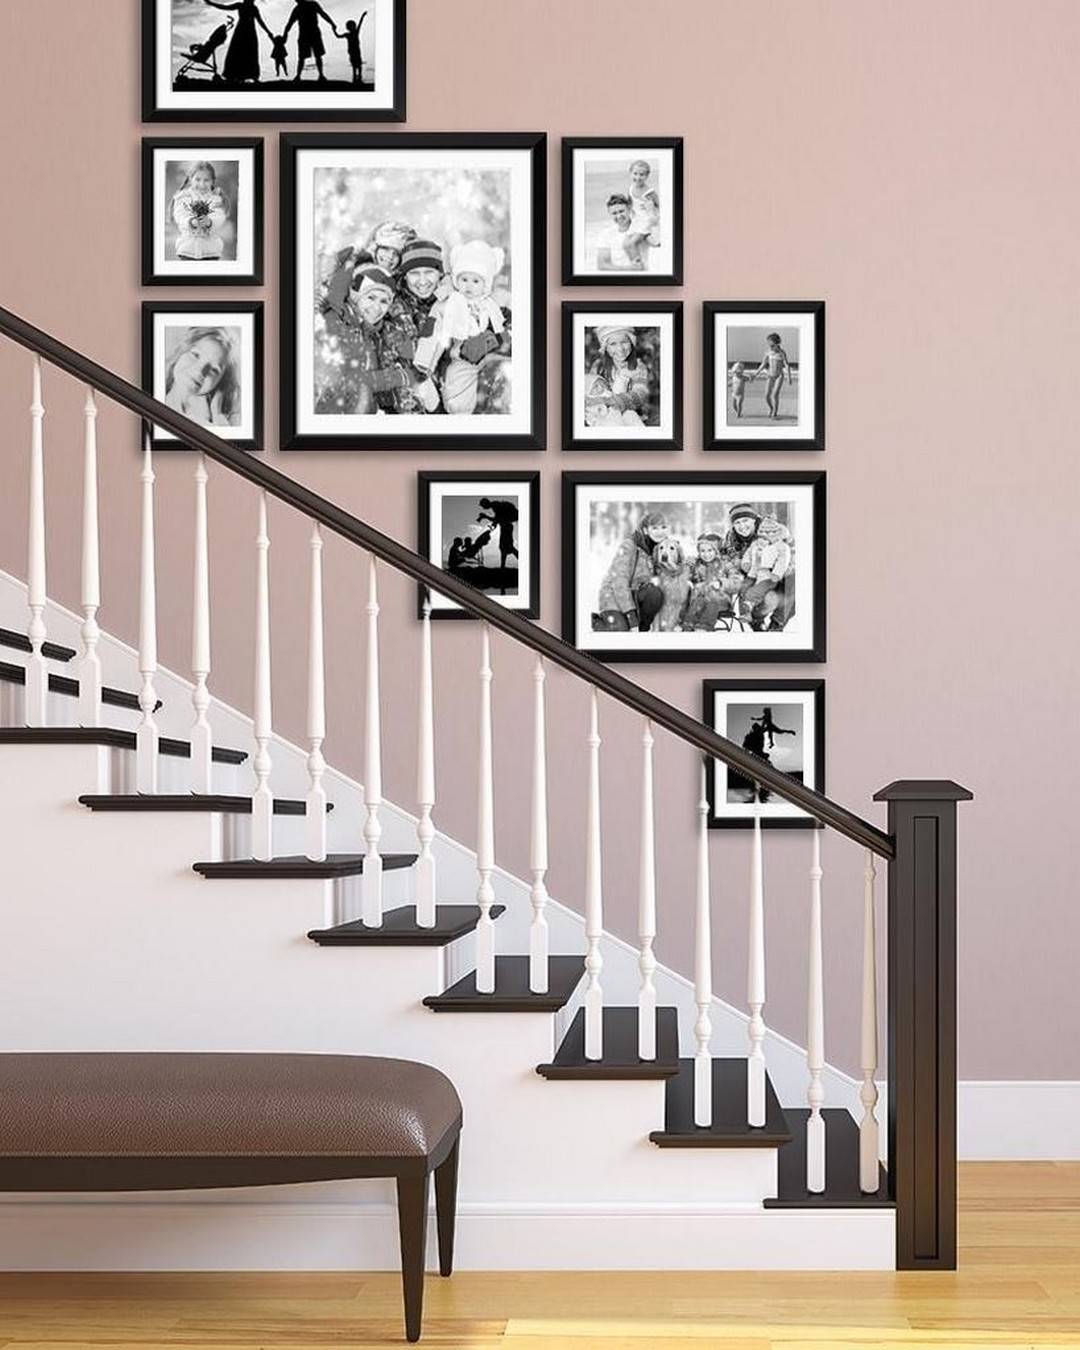 Pared de la escalera decorada con fotografías familiares en blanco y negro